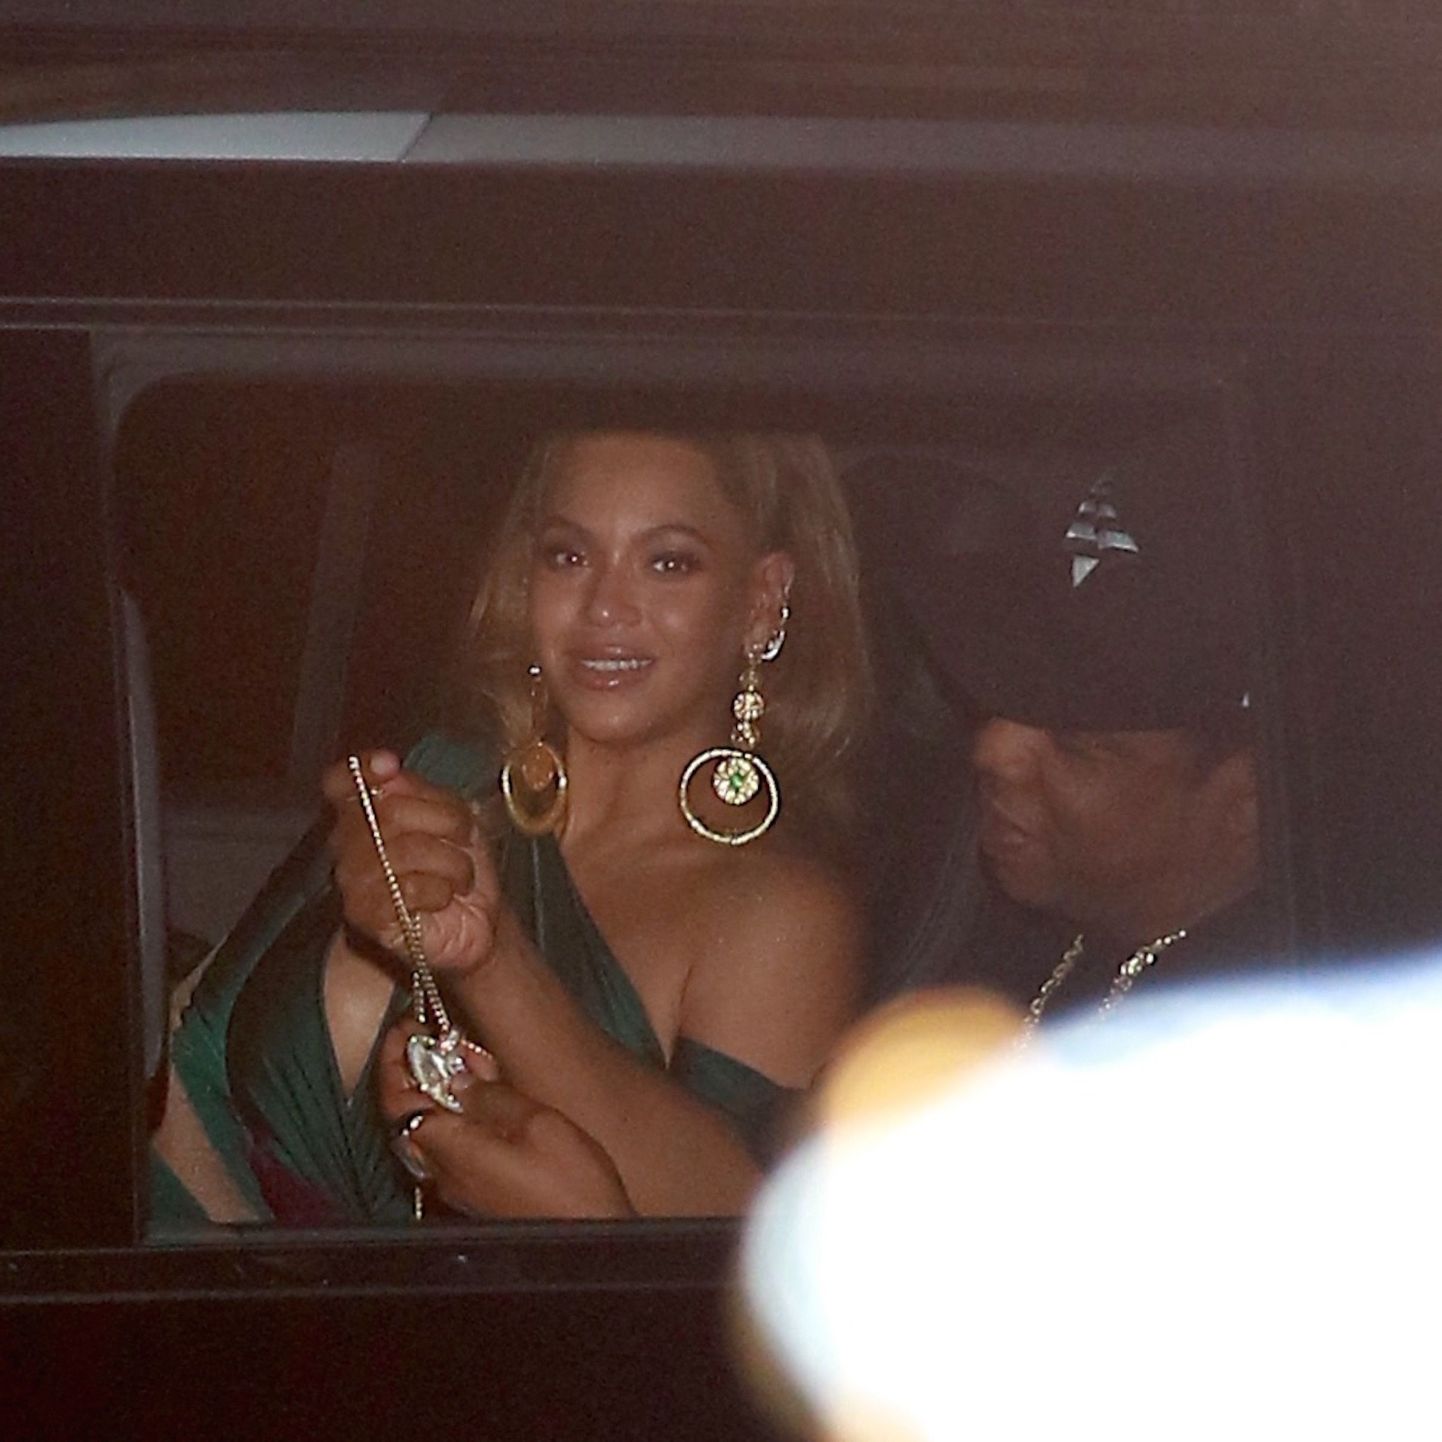 Beyonce ja Jay Z